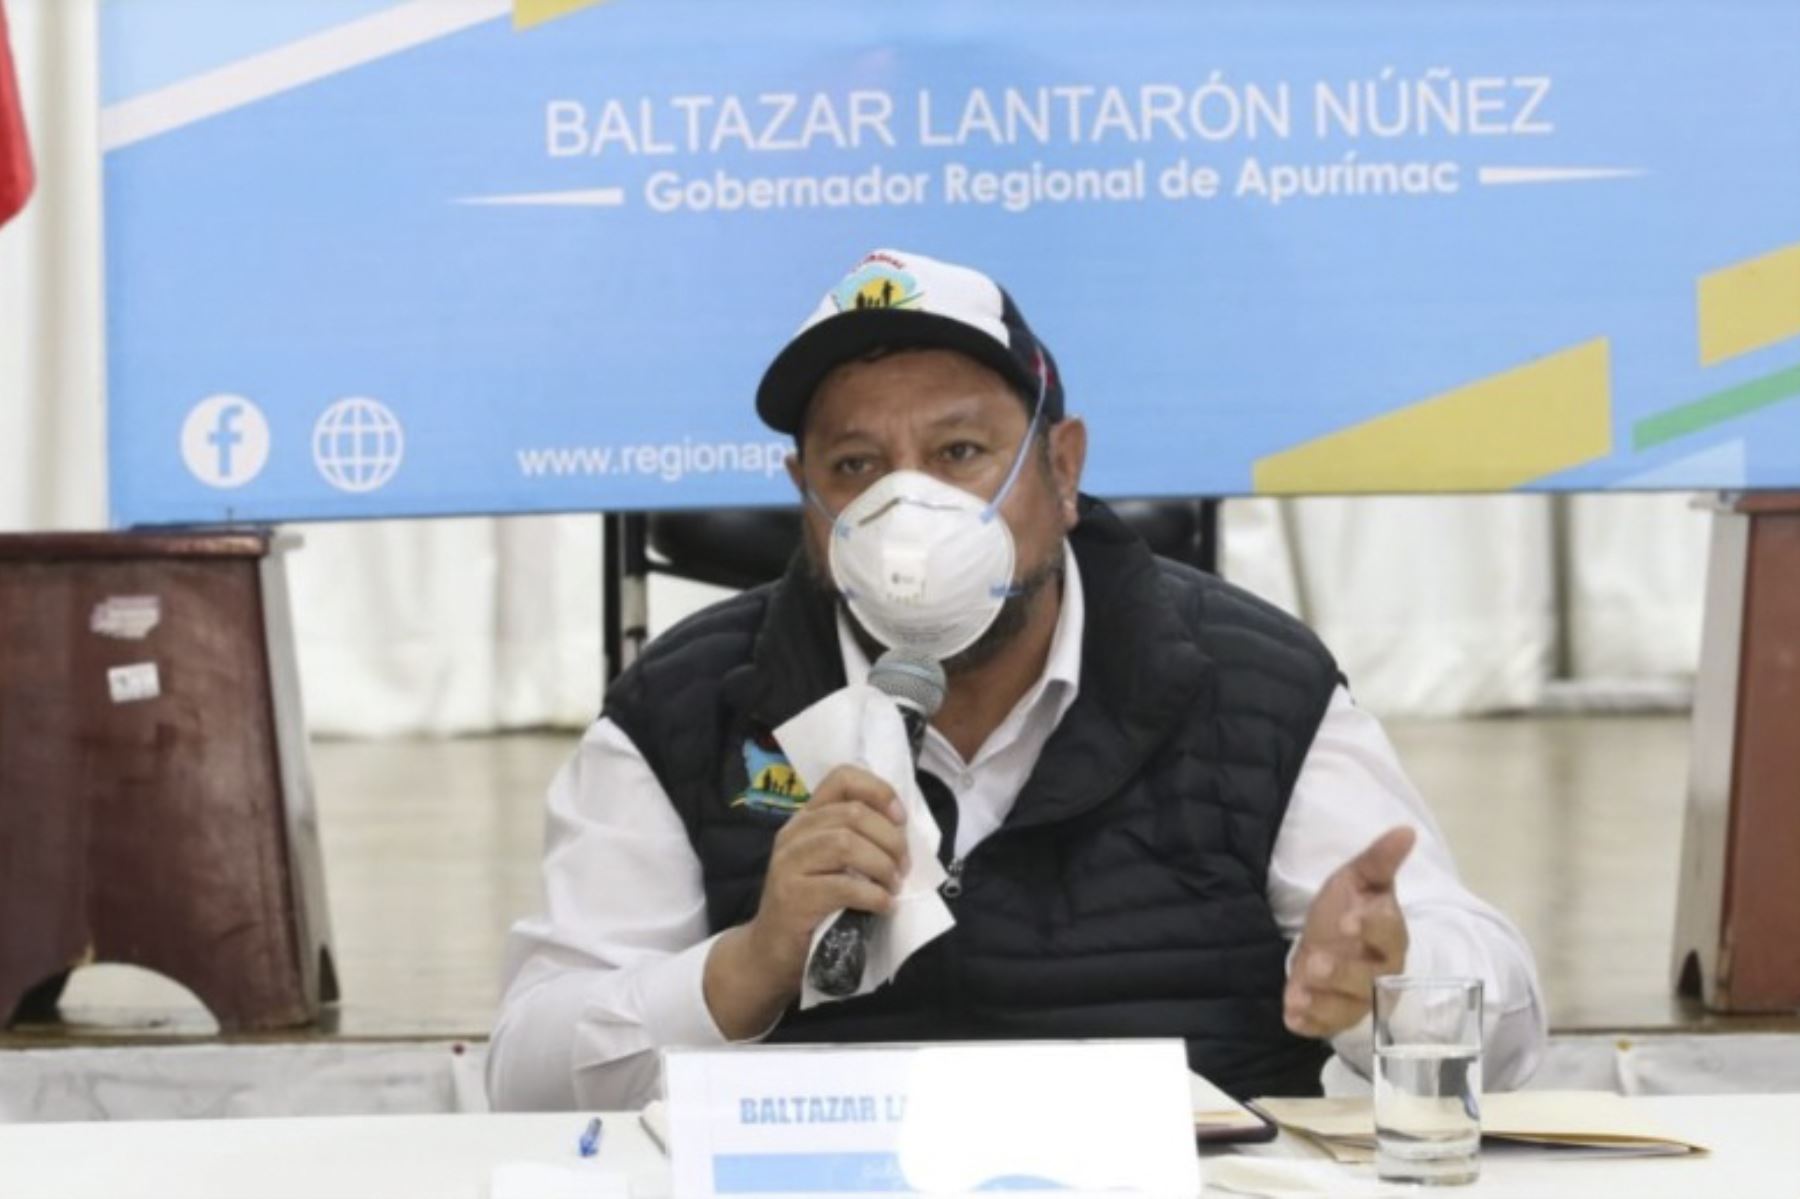 Gobernador regional de Apurímac, Baltazar Lantarón, se contagió de covid-19 y ahora cumple cuarentena. Foto: ANDINA/difusión.